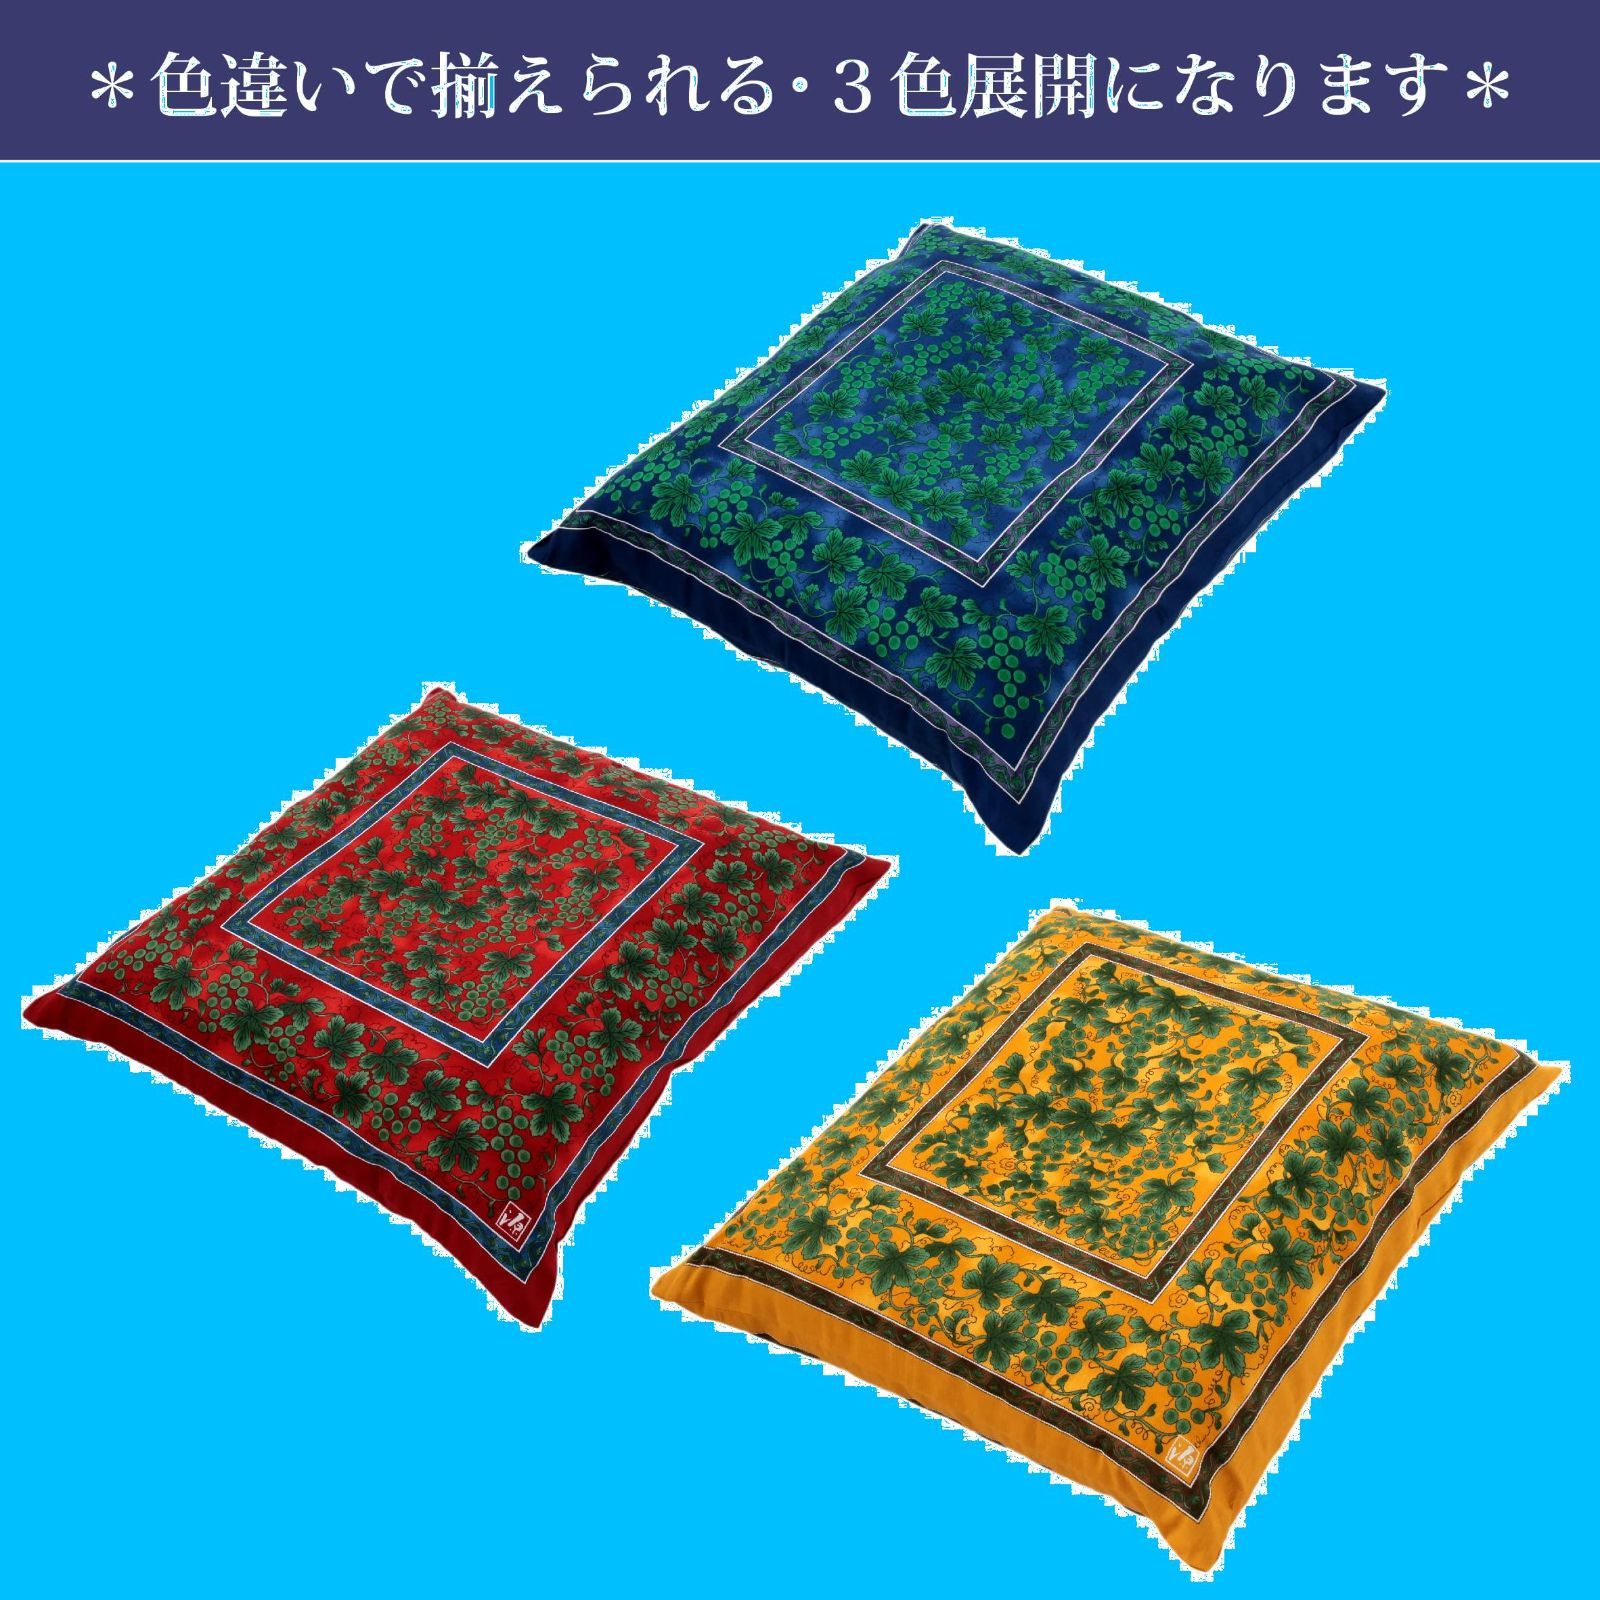 西川(Nishikawa) 座布団カバー 八端判(59X63cm) 洗える 緑彩 さくらの木道 メルカリ